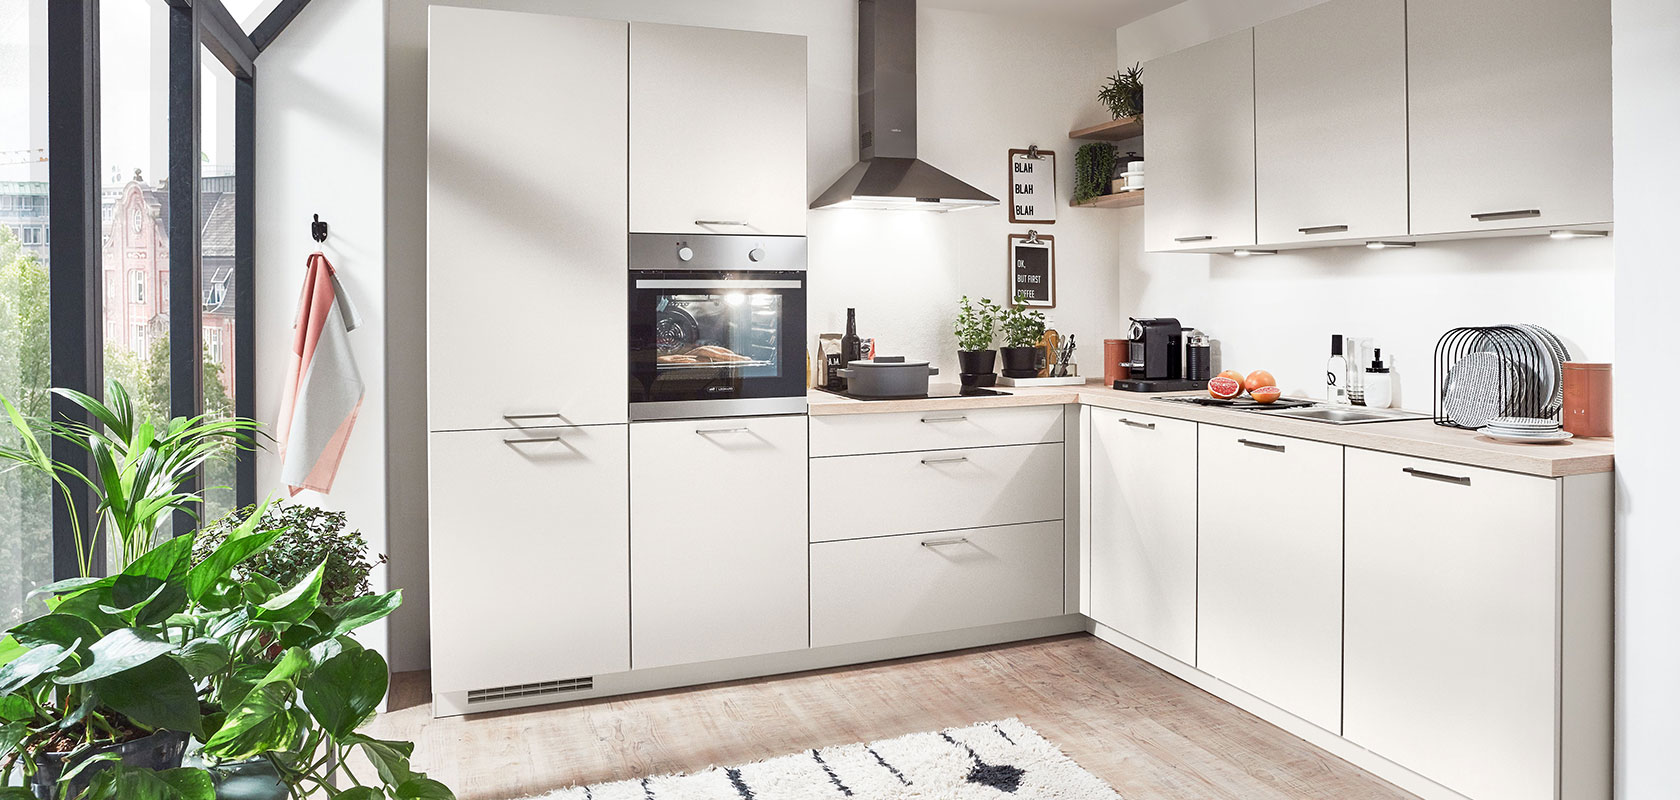 Interior de cocina moderna con gabinetes blancos, electrodomésticos empotrados y un toque de vegetación junto a la ventana, ilustrando un diseño de hogar urbano limpio y contemporáneo.